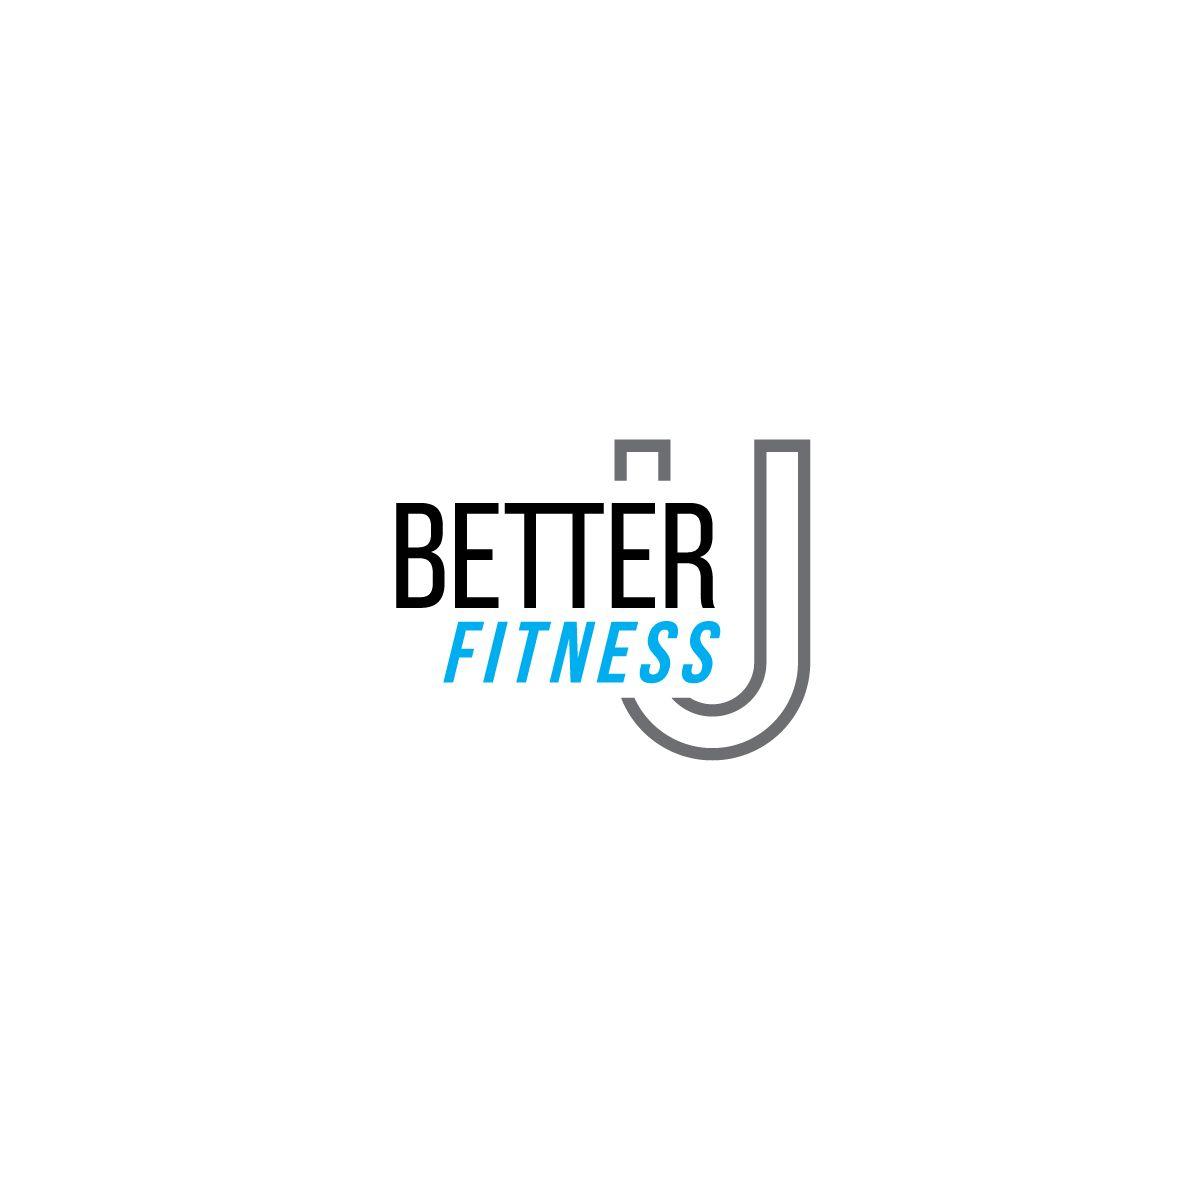 Better U Logo - Bold, Modern, Fitness Logo Design for Better U Fitness